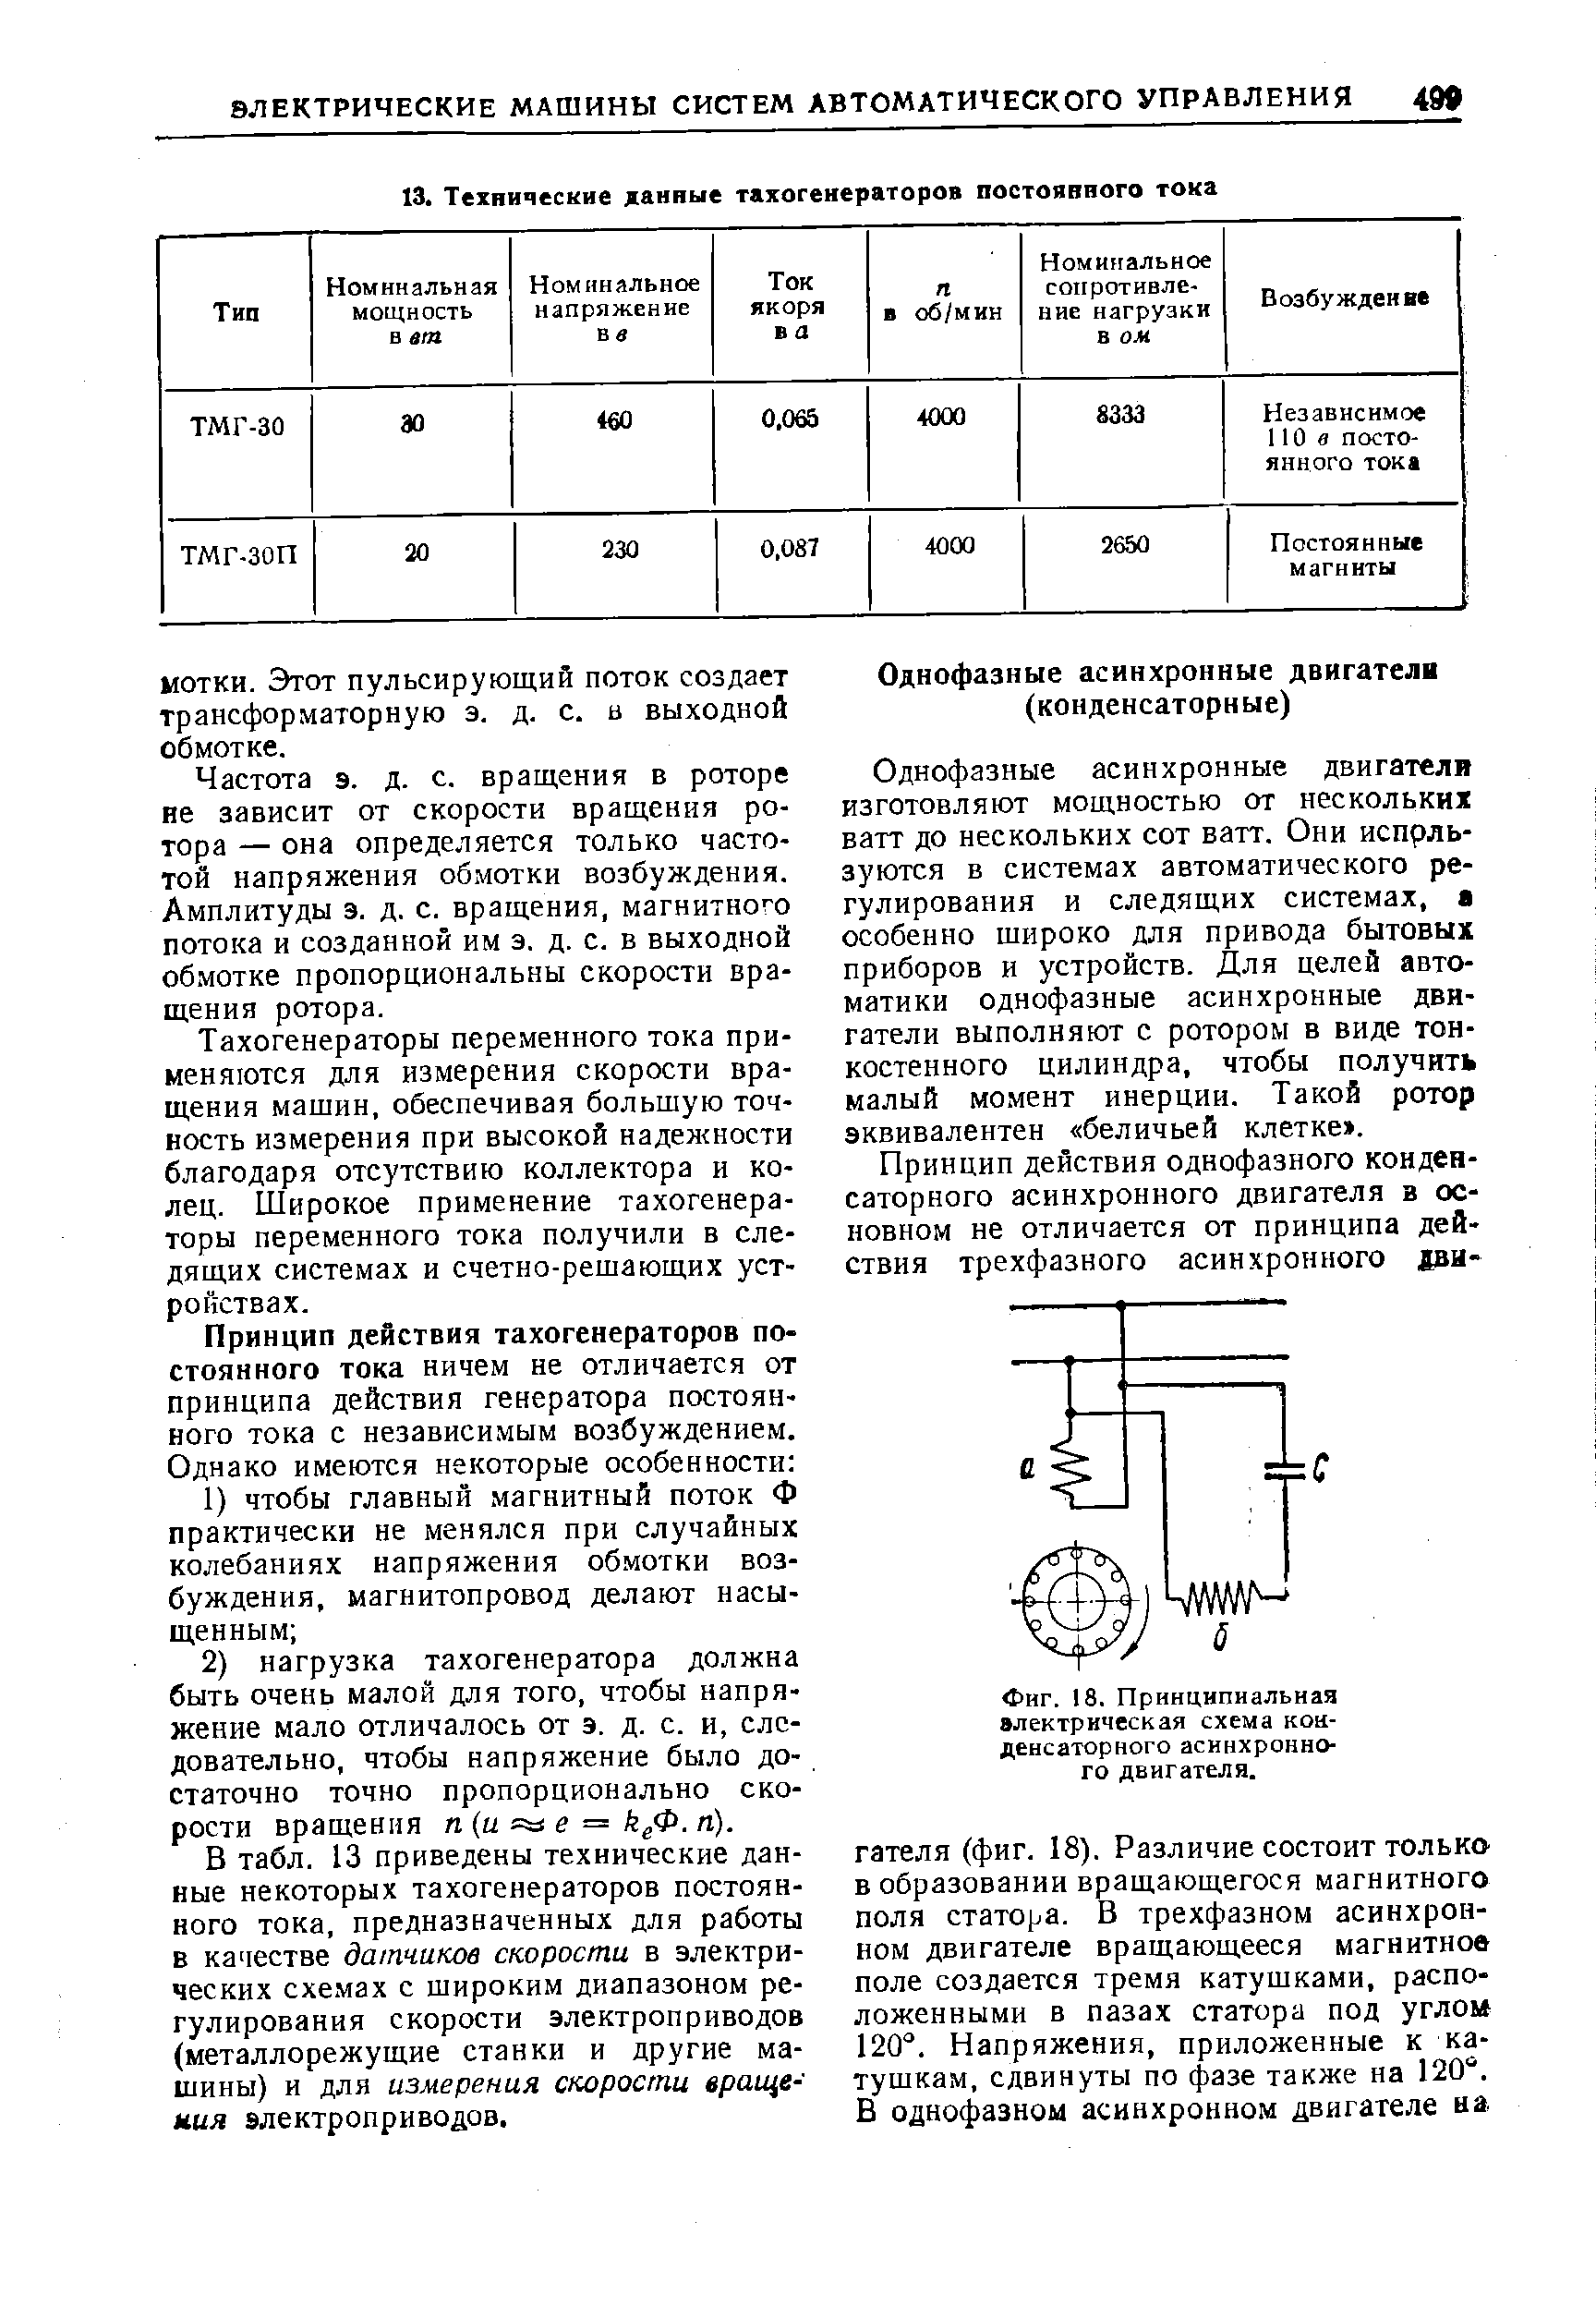 Фиг. 18. Принципиальная электрическая схема конденсаторного асинхронного двигателя.
